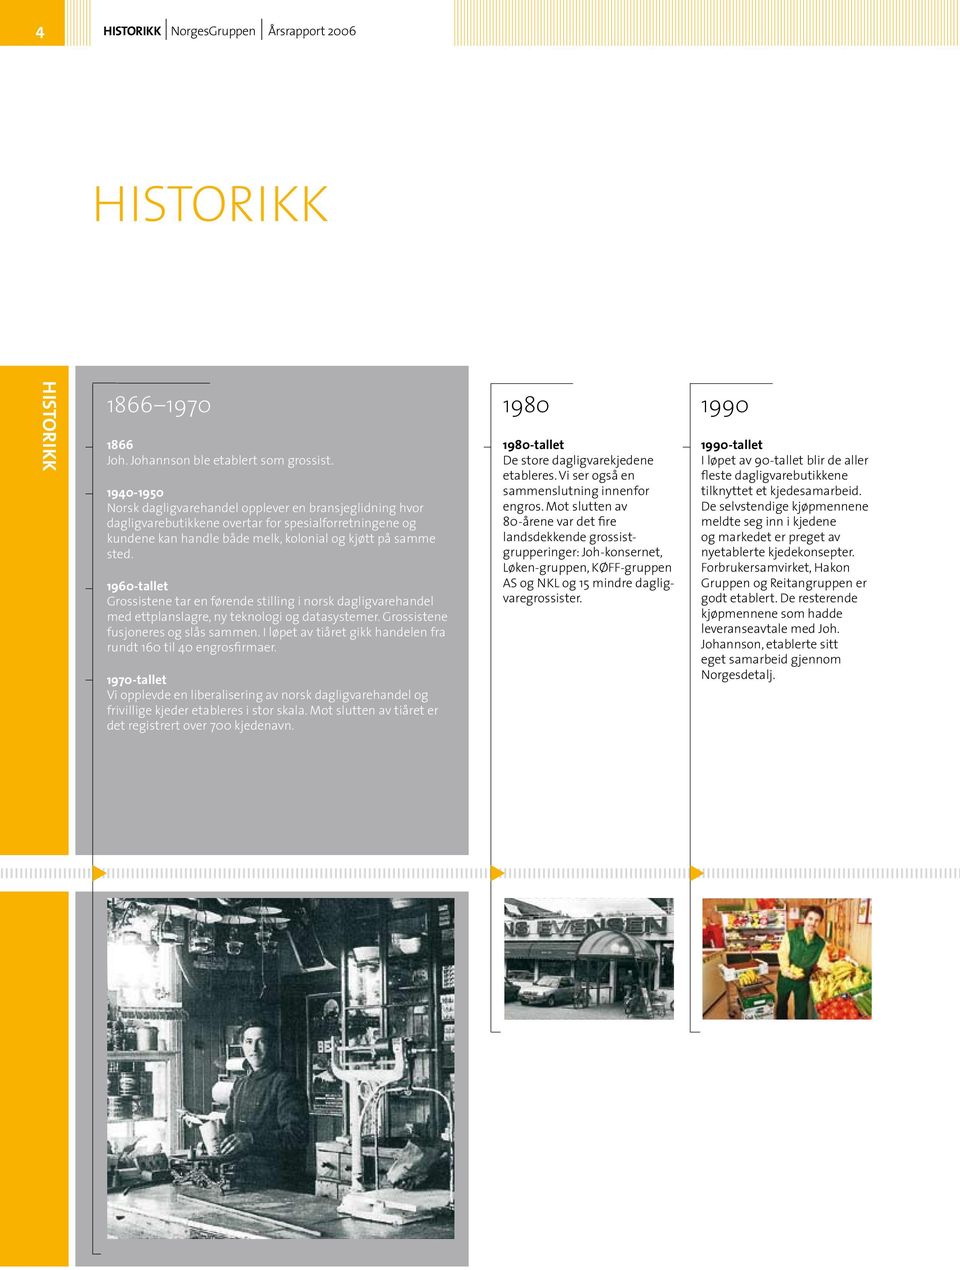 1960-tallet Grossistene tar en førende stilling i norsk dagligvarehandel med ettplanslagre, ny teknologi og datasystemer. Grossistene fusjoneres og slås sammen.